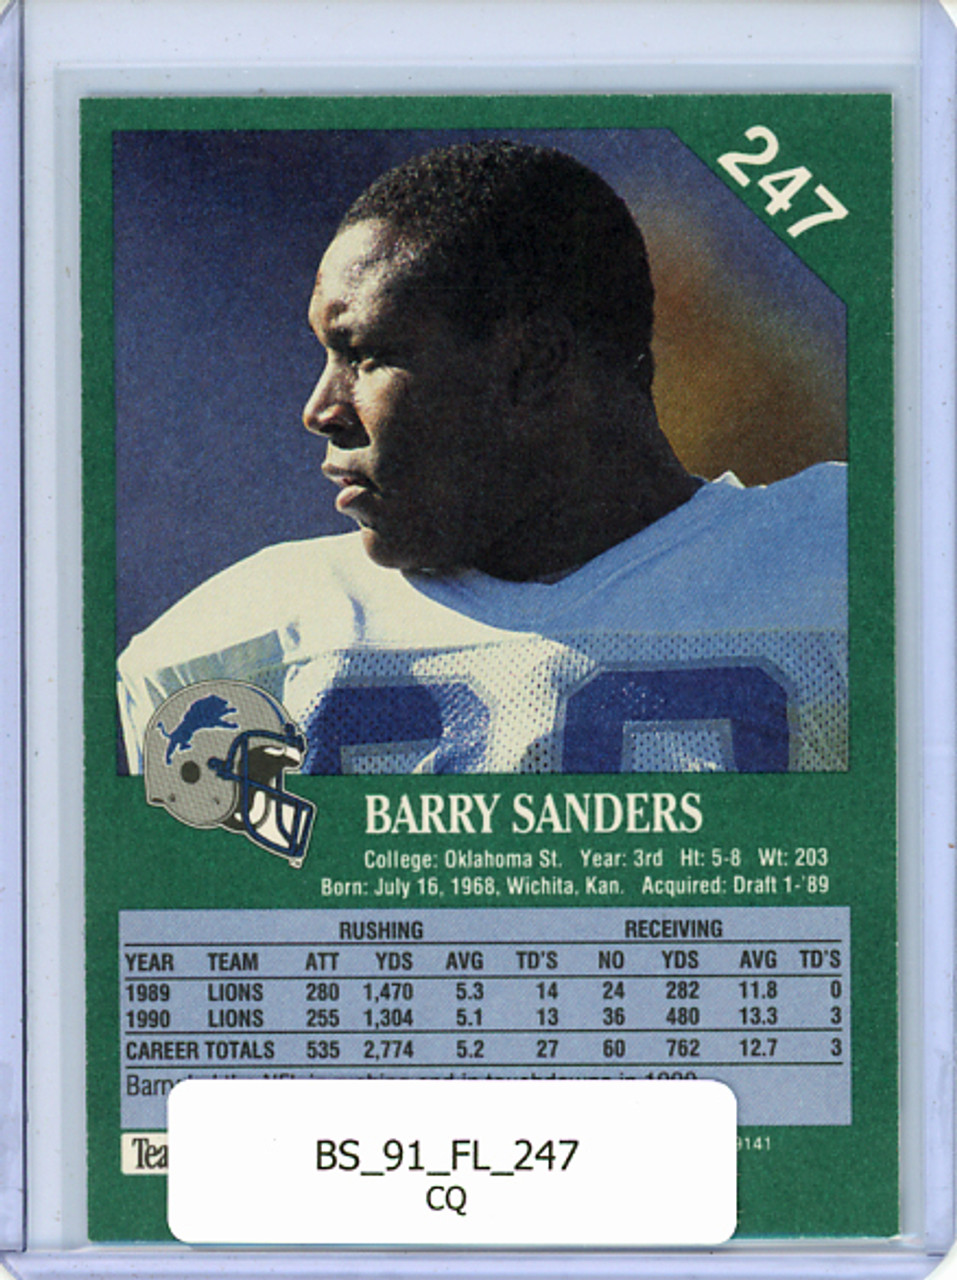 Barry Sanders 1991 Fleer #247 (CQ)